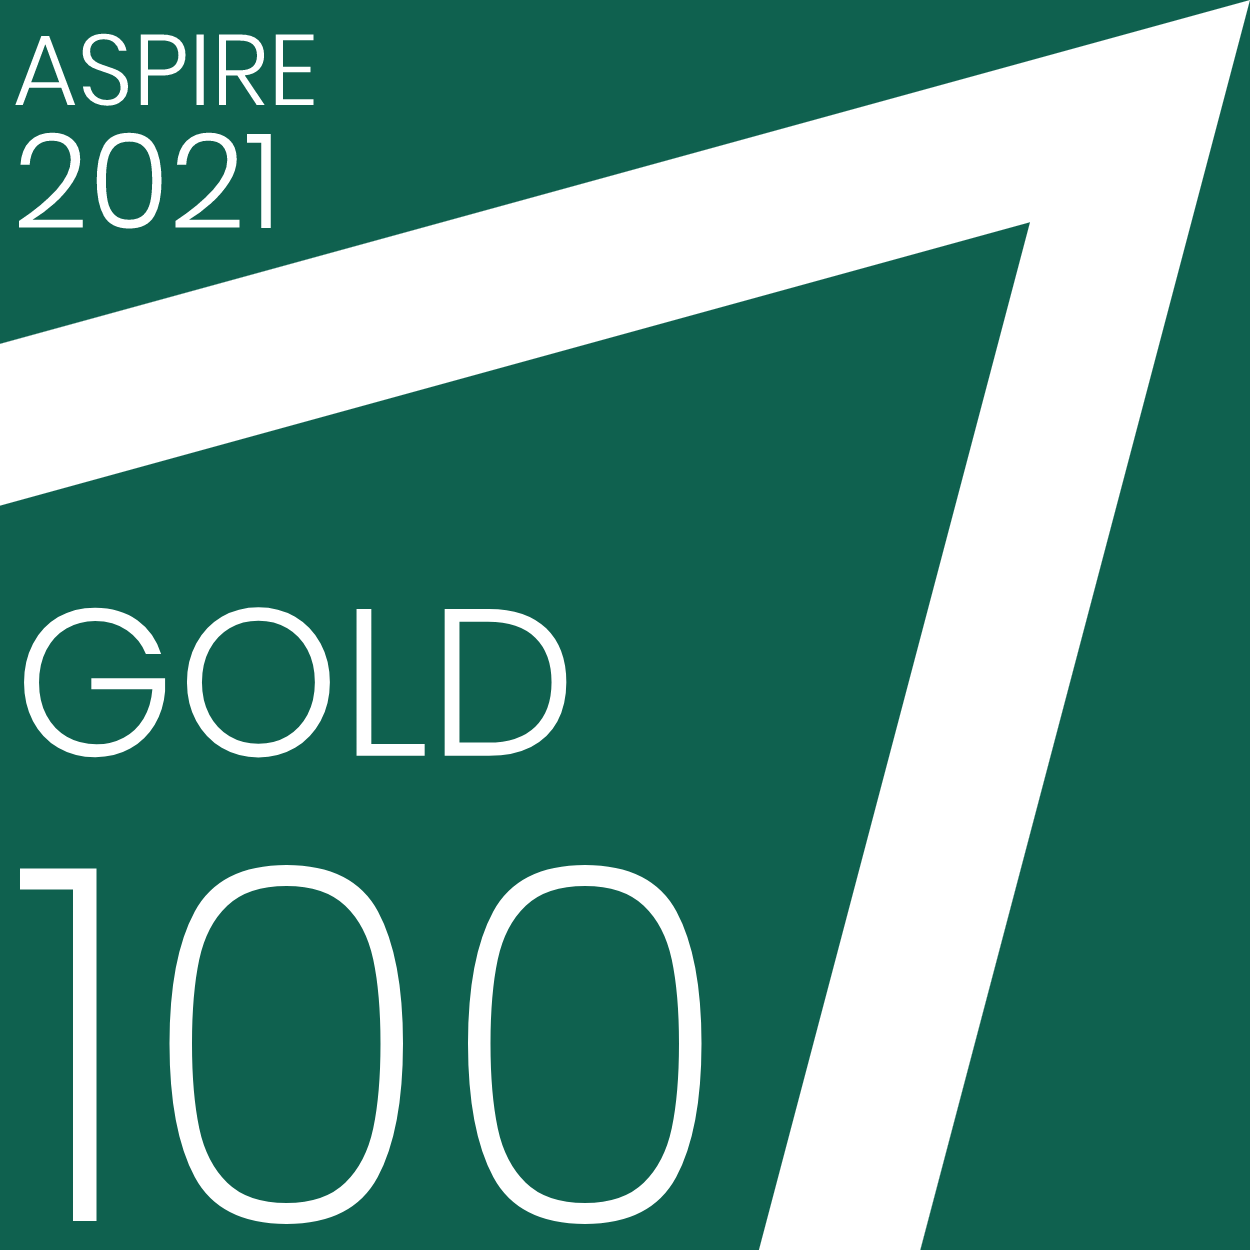 Aspire 2021, Gold Award, 100%